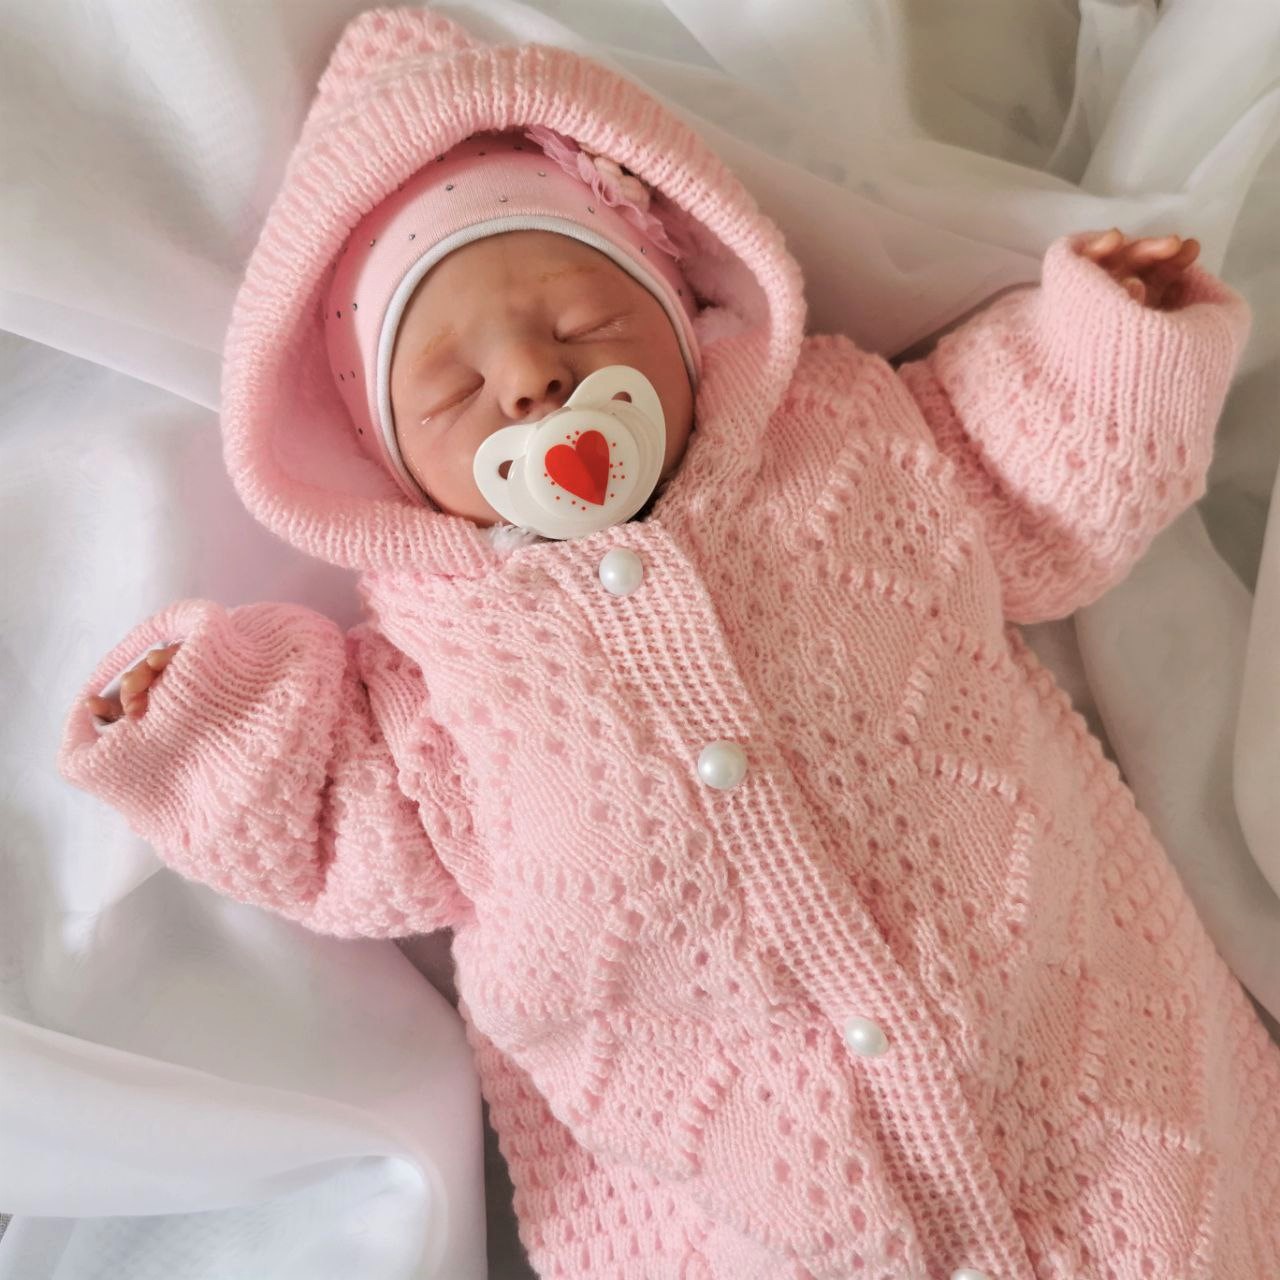 Лучшая одежда для новорожденных: обзор преимуществ и недостатков ⦁ ТОП-5  лучших вещей для младенца ✔️ Какие вещи лучше купить новорожденному на  первое время?